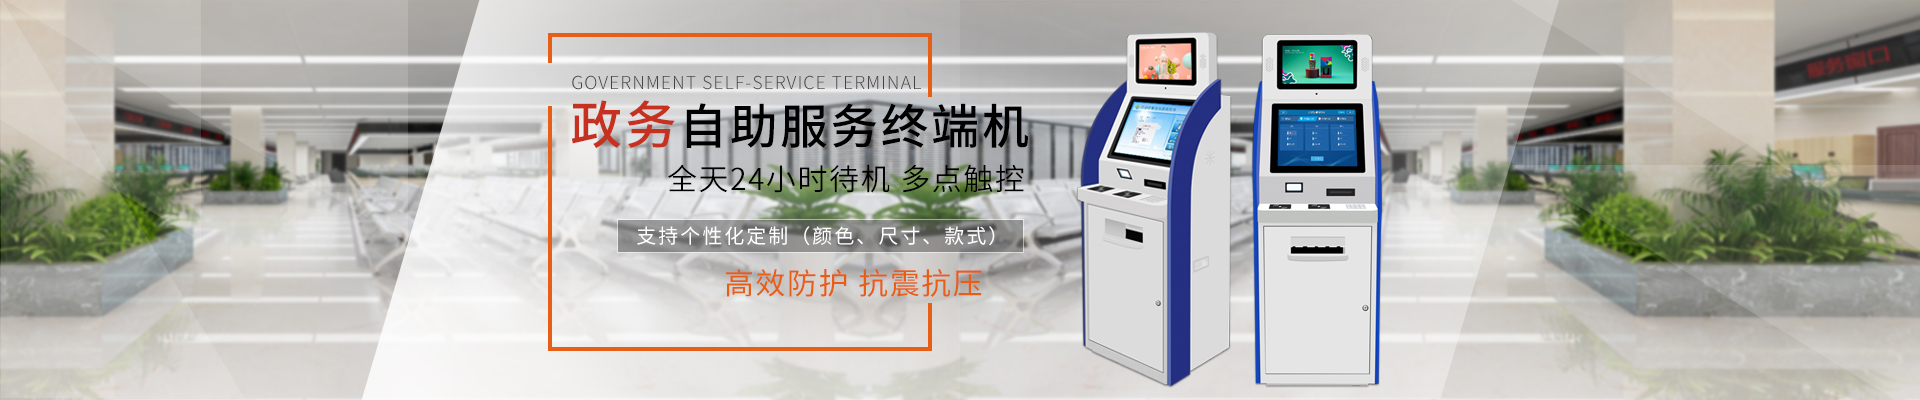 自助终端机,广州自助服务终端机,自助查询终端机